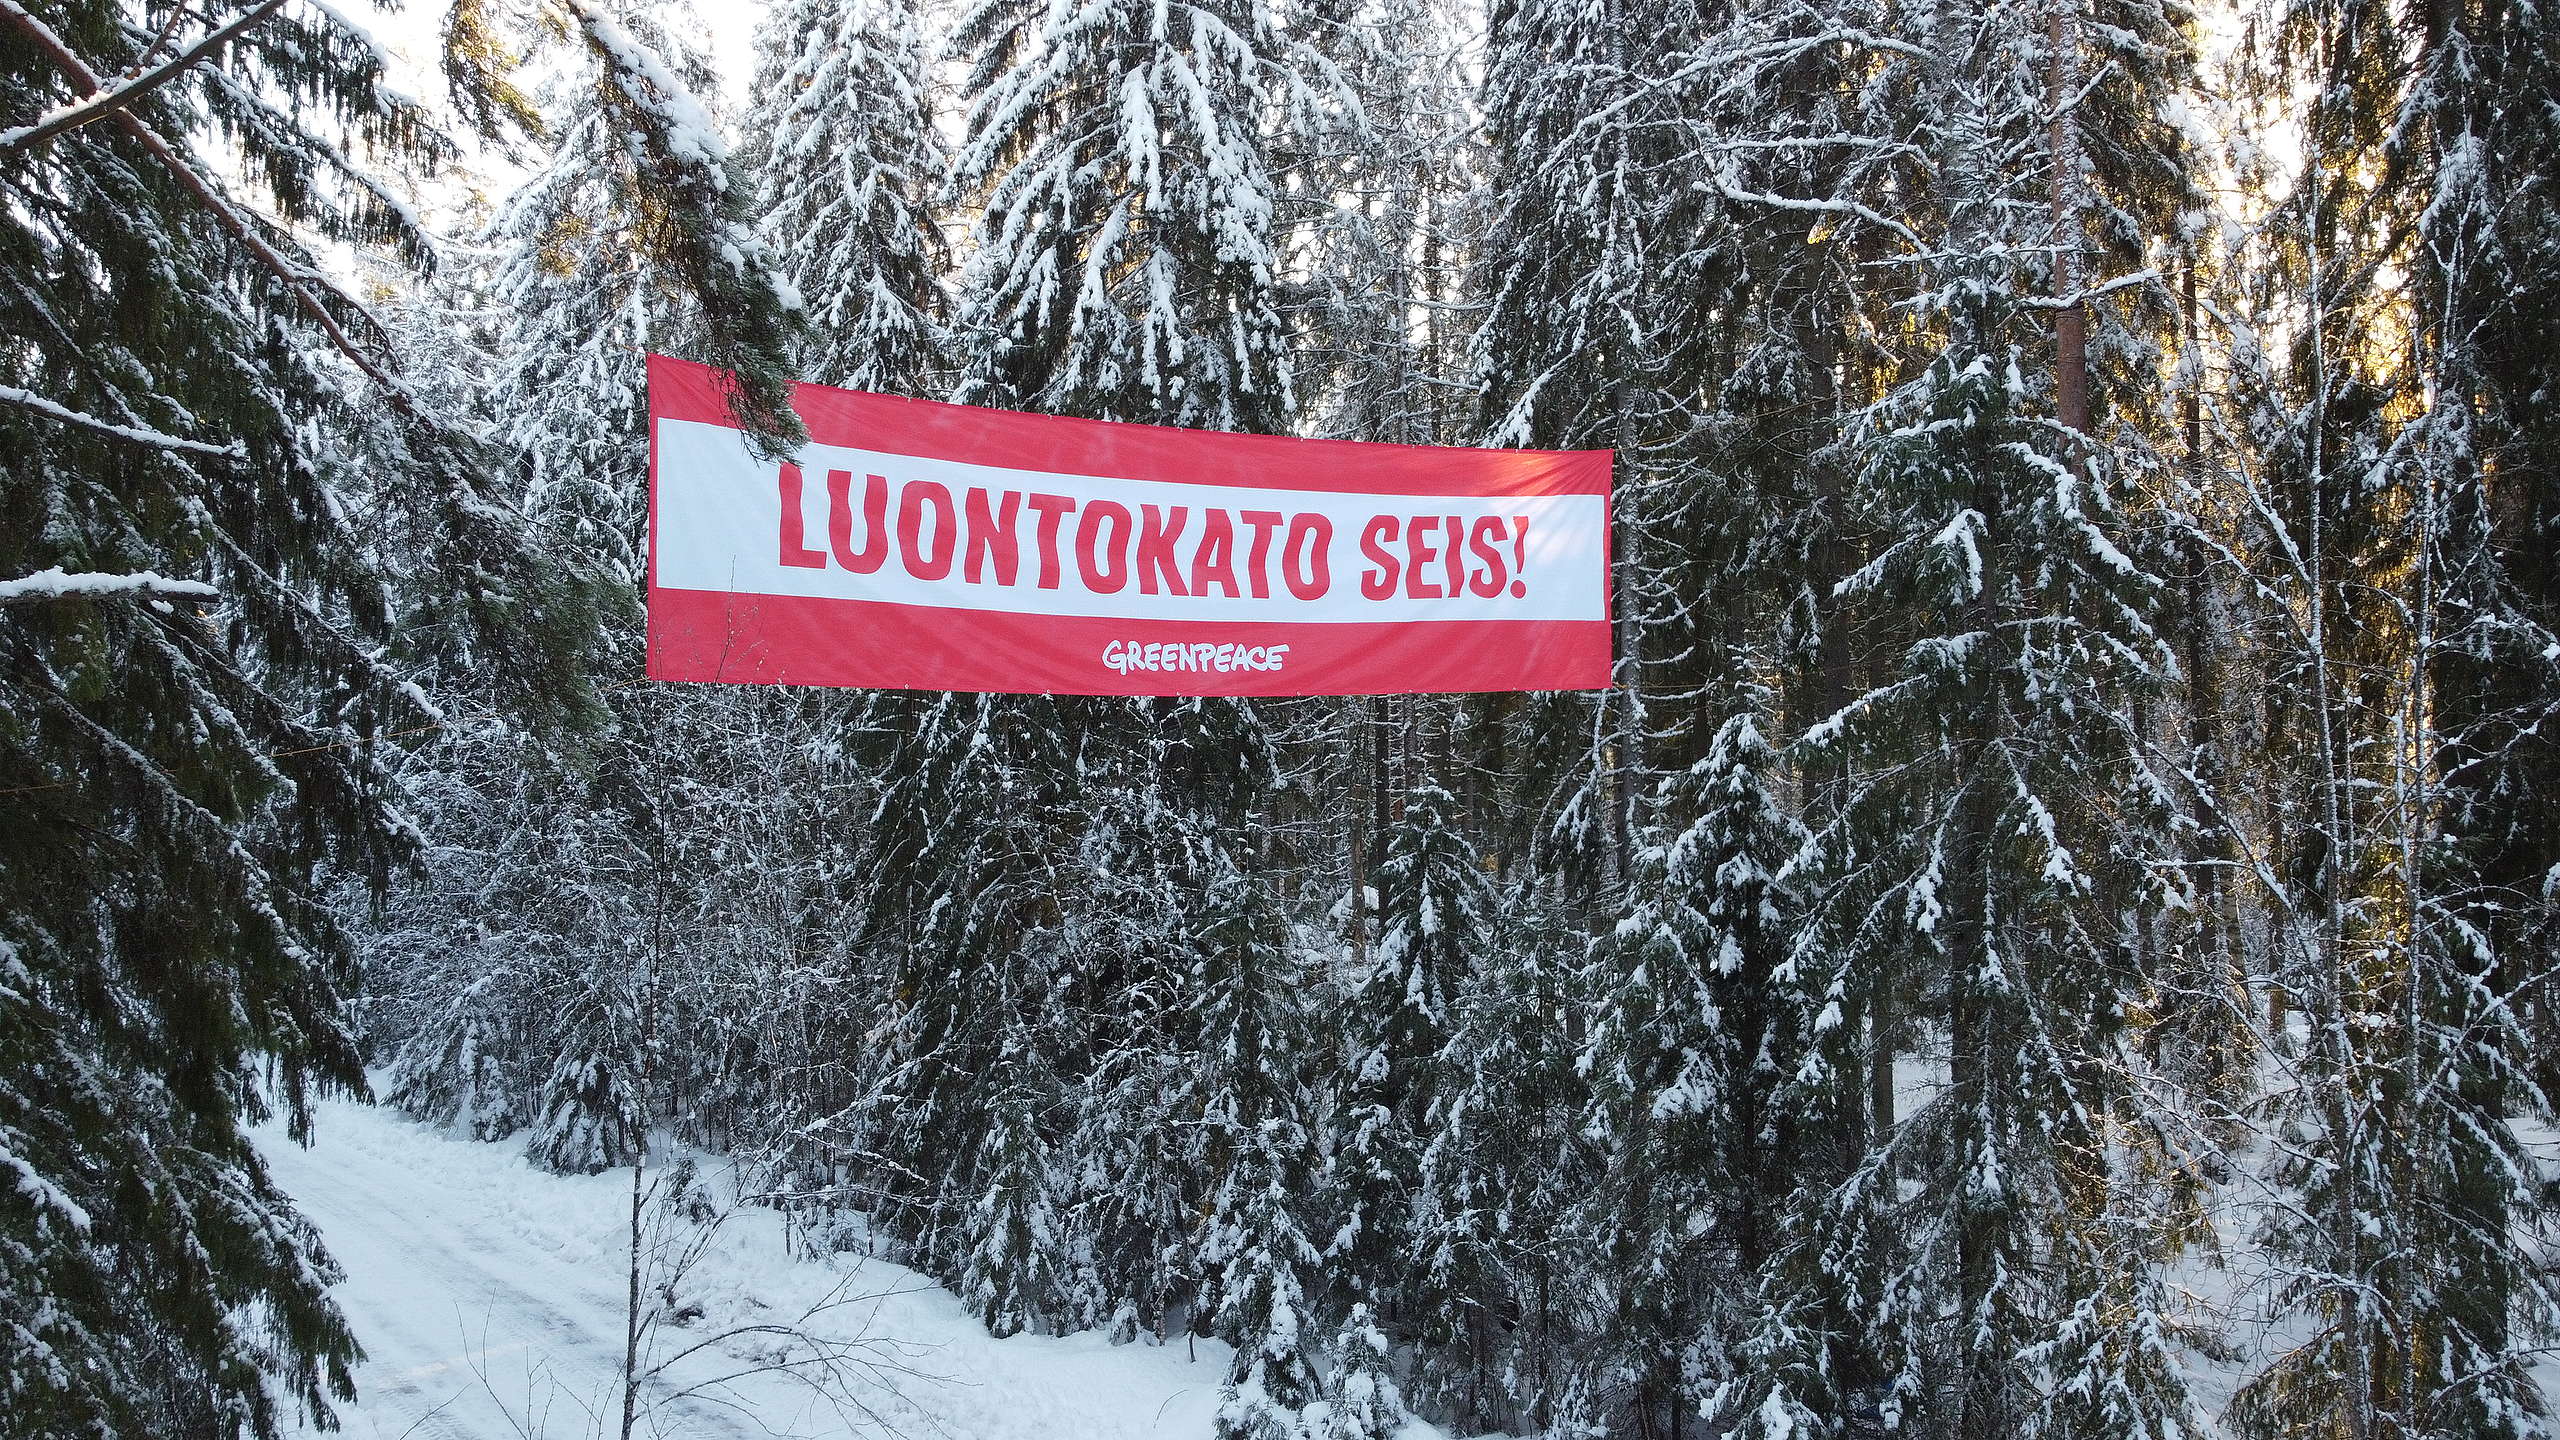 Korkealla puihin viritetty banderolli, jossa lukee "Luontokato seis!".